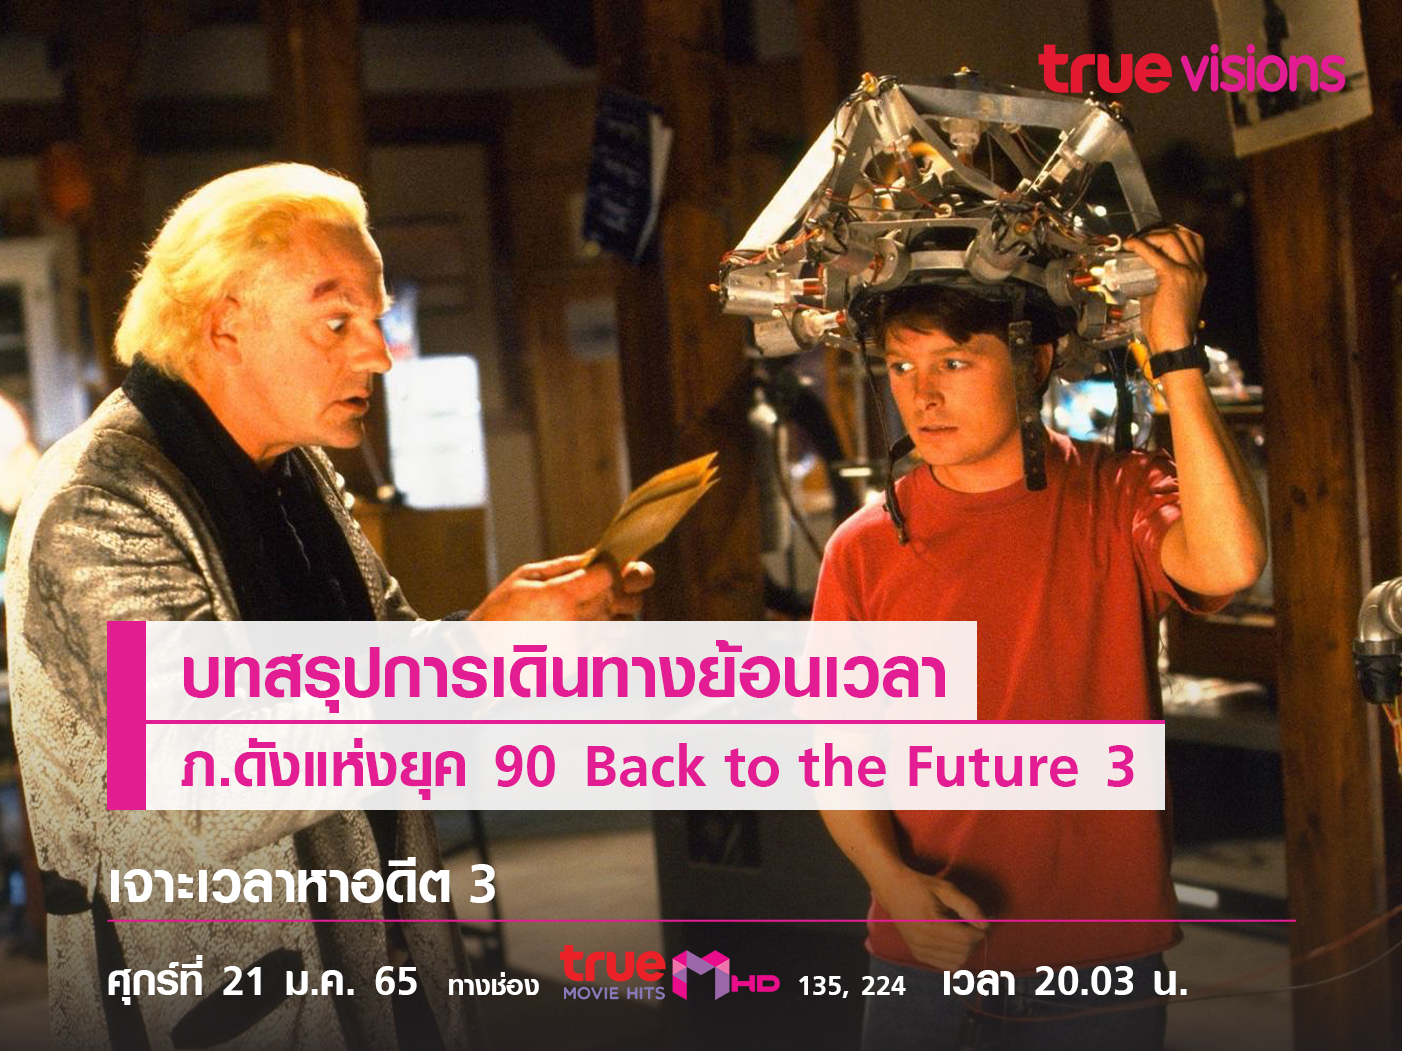 บทสรุปการเดินทางย้อนเวลา  ภ.ดังแห่งยุค 90  "Back to the Future 3" 